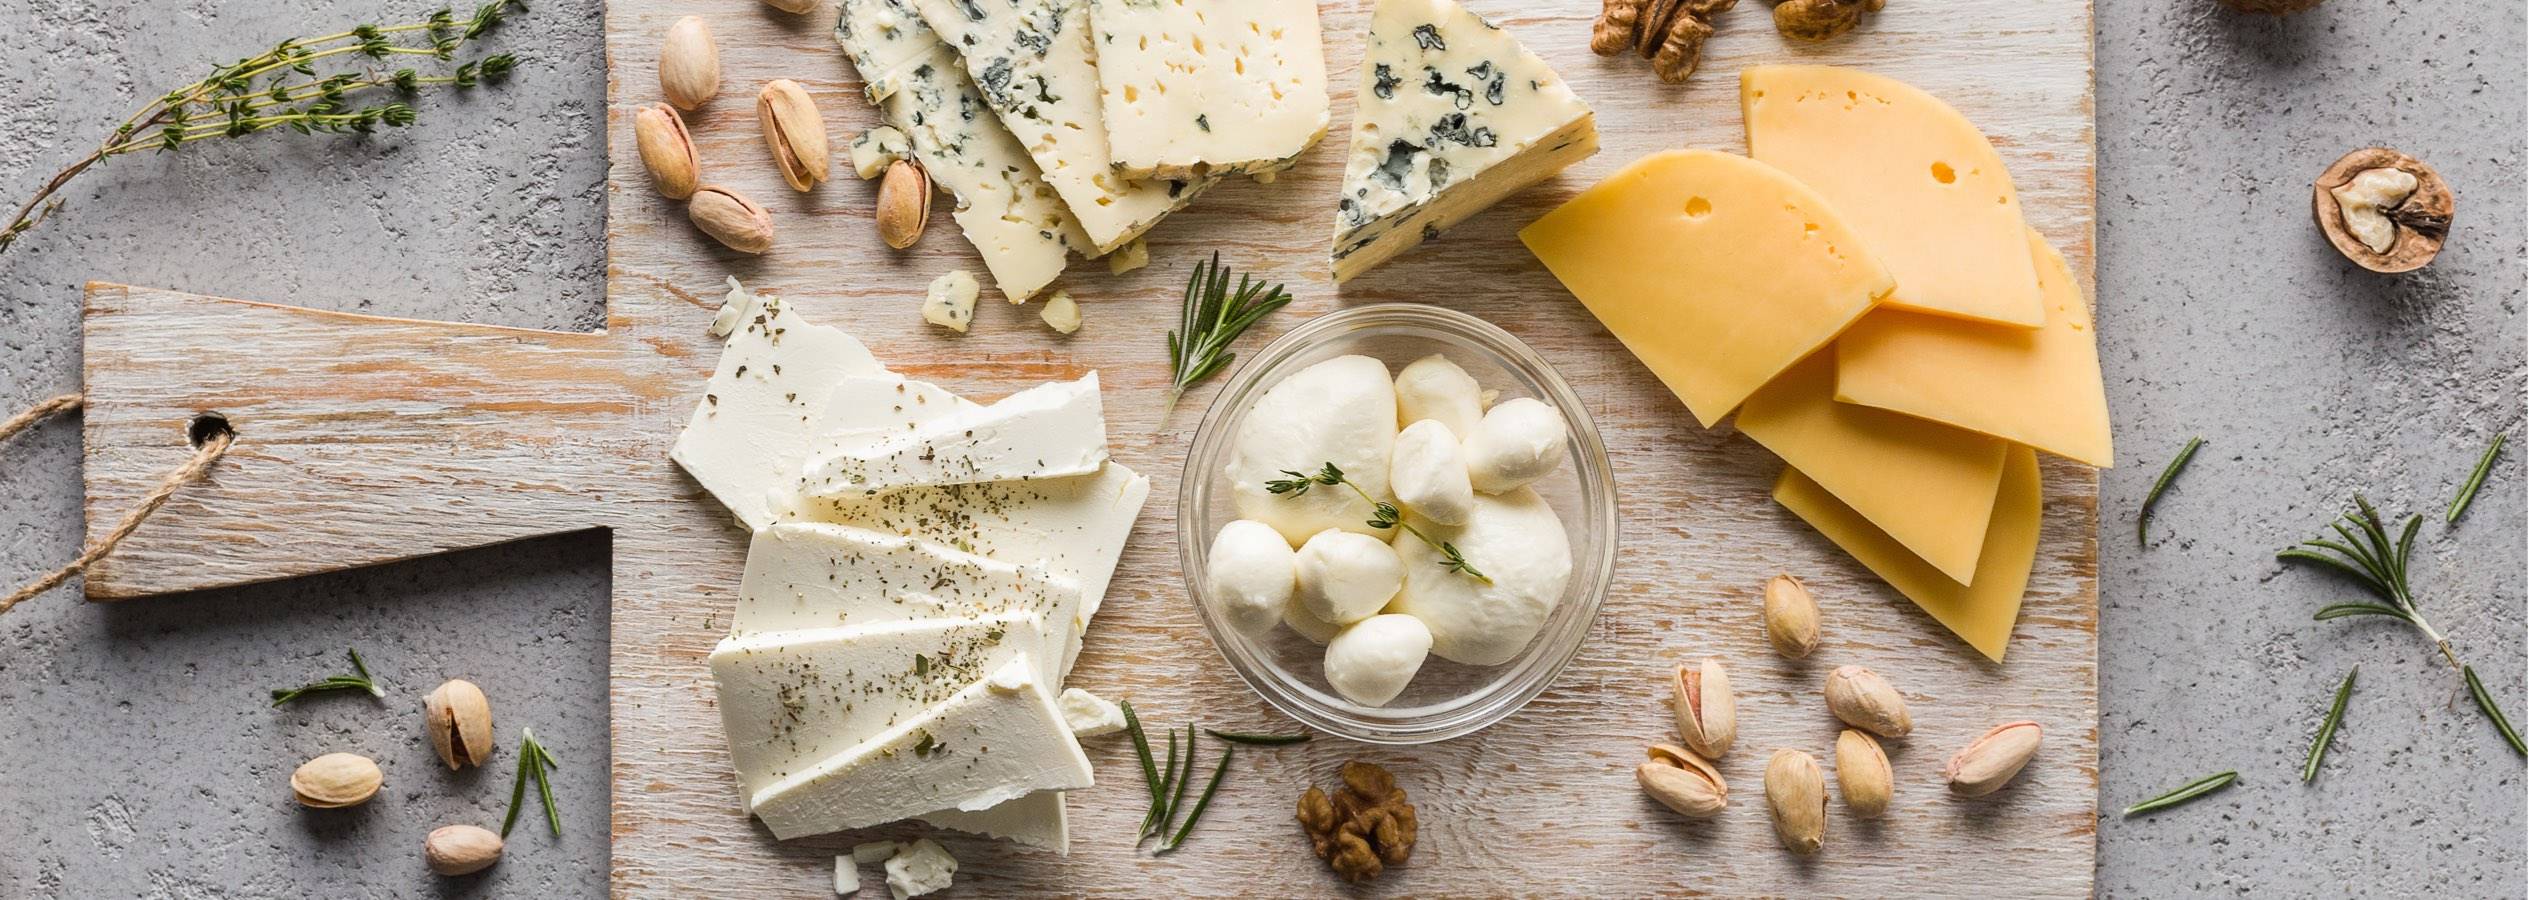 Brânză / specialități